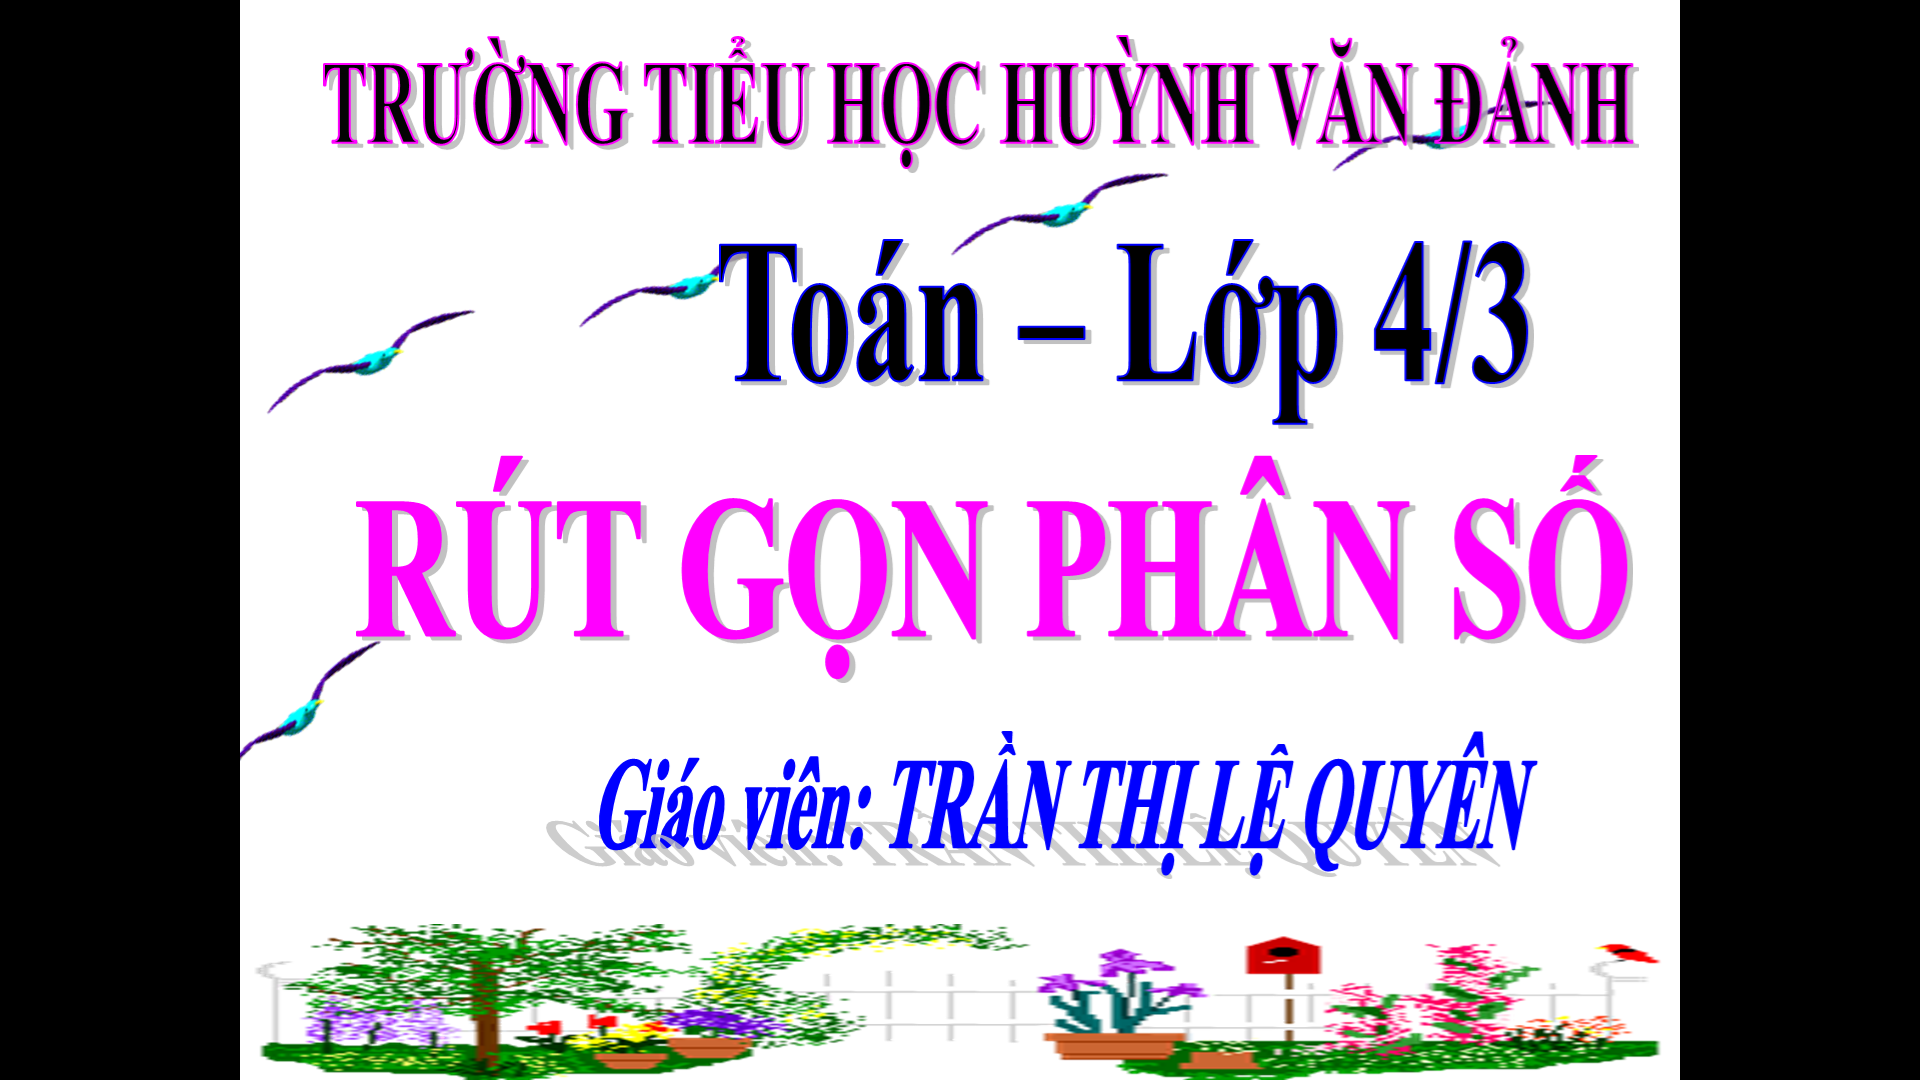 Rút gọn phân số_TH Huỳnh Văn Đảnh_Tân Trụ